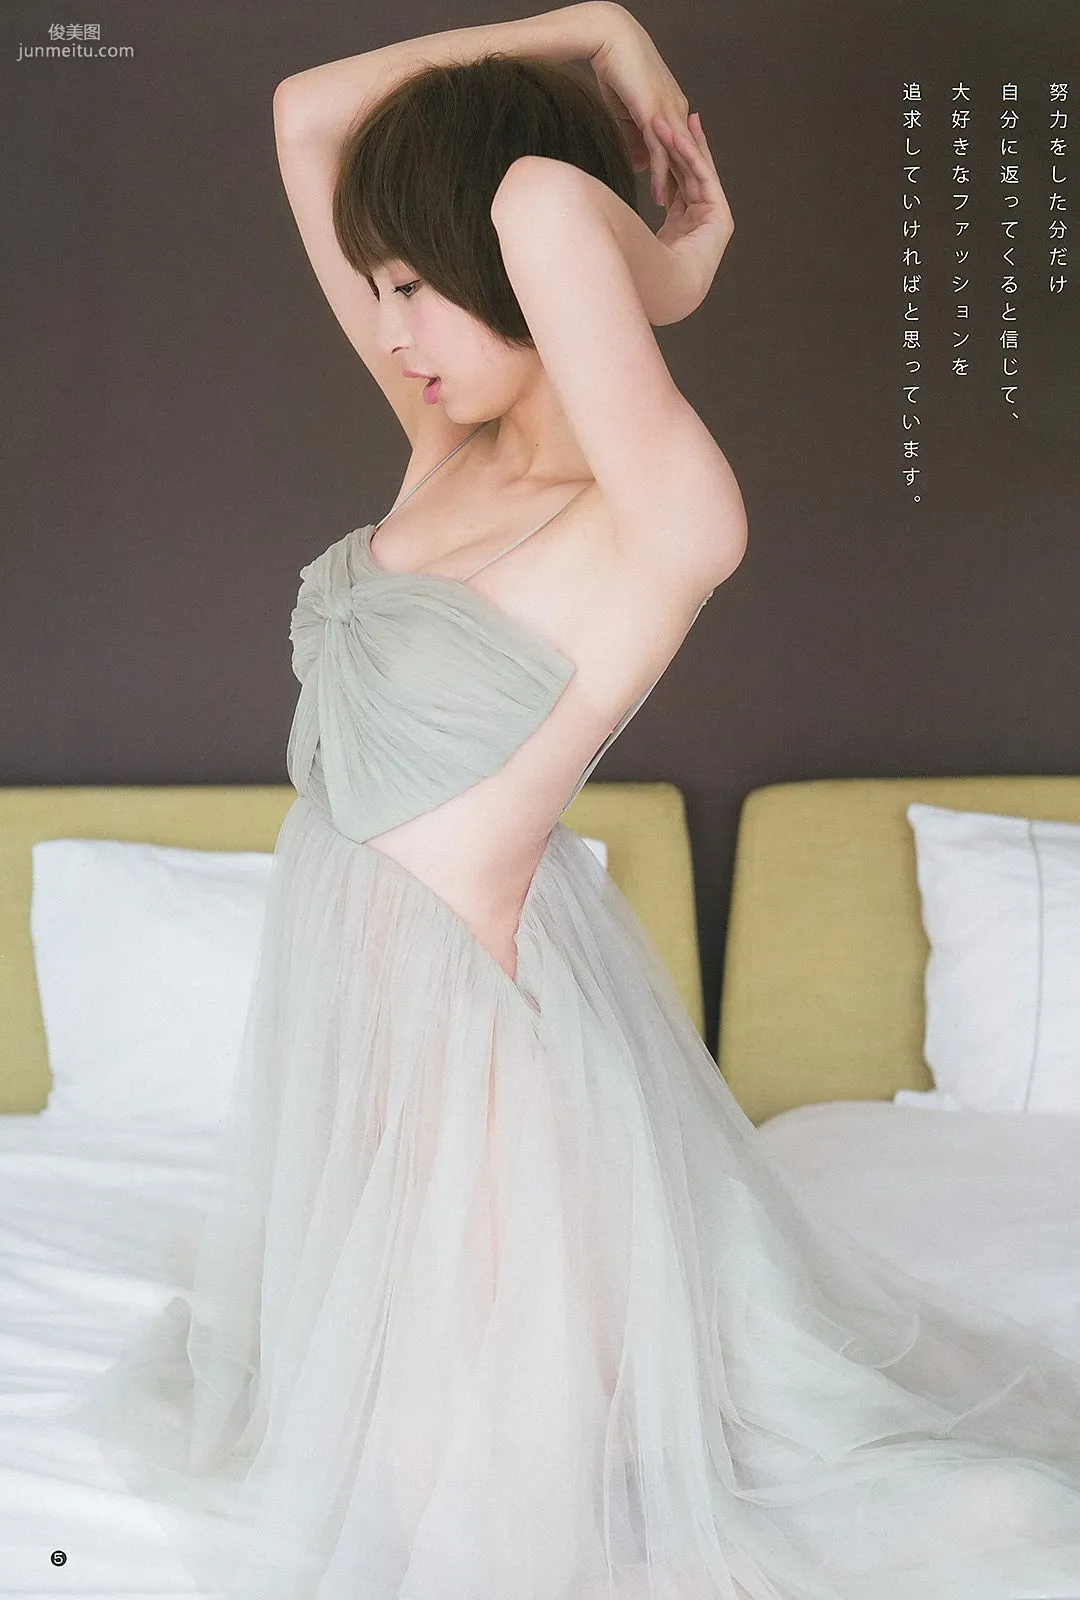 篠田麻里子 アオハルガールズ 中条あやみ [Weekly Young Jump] 2013年No.36-37 写真杂志6